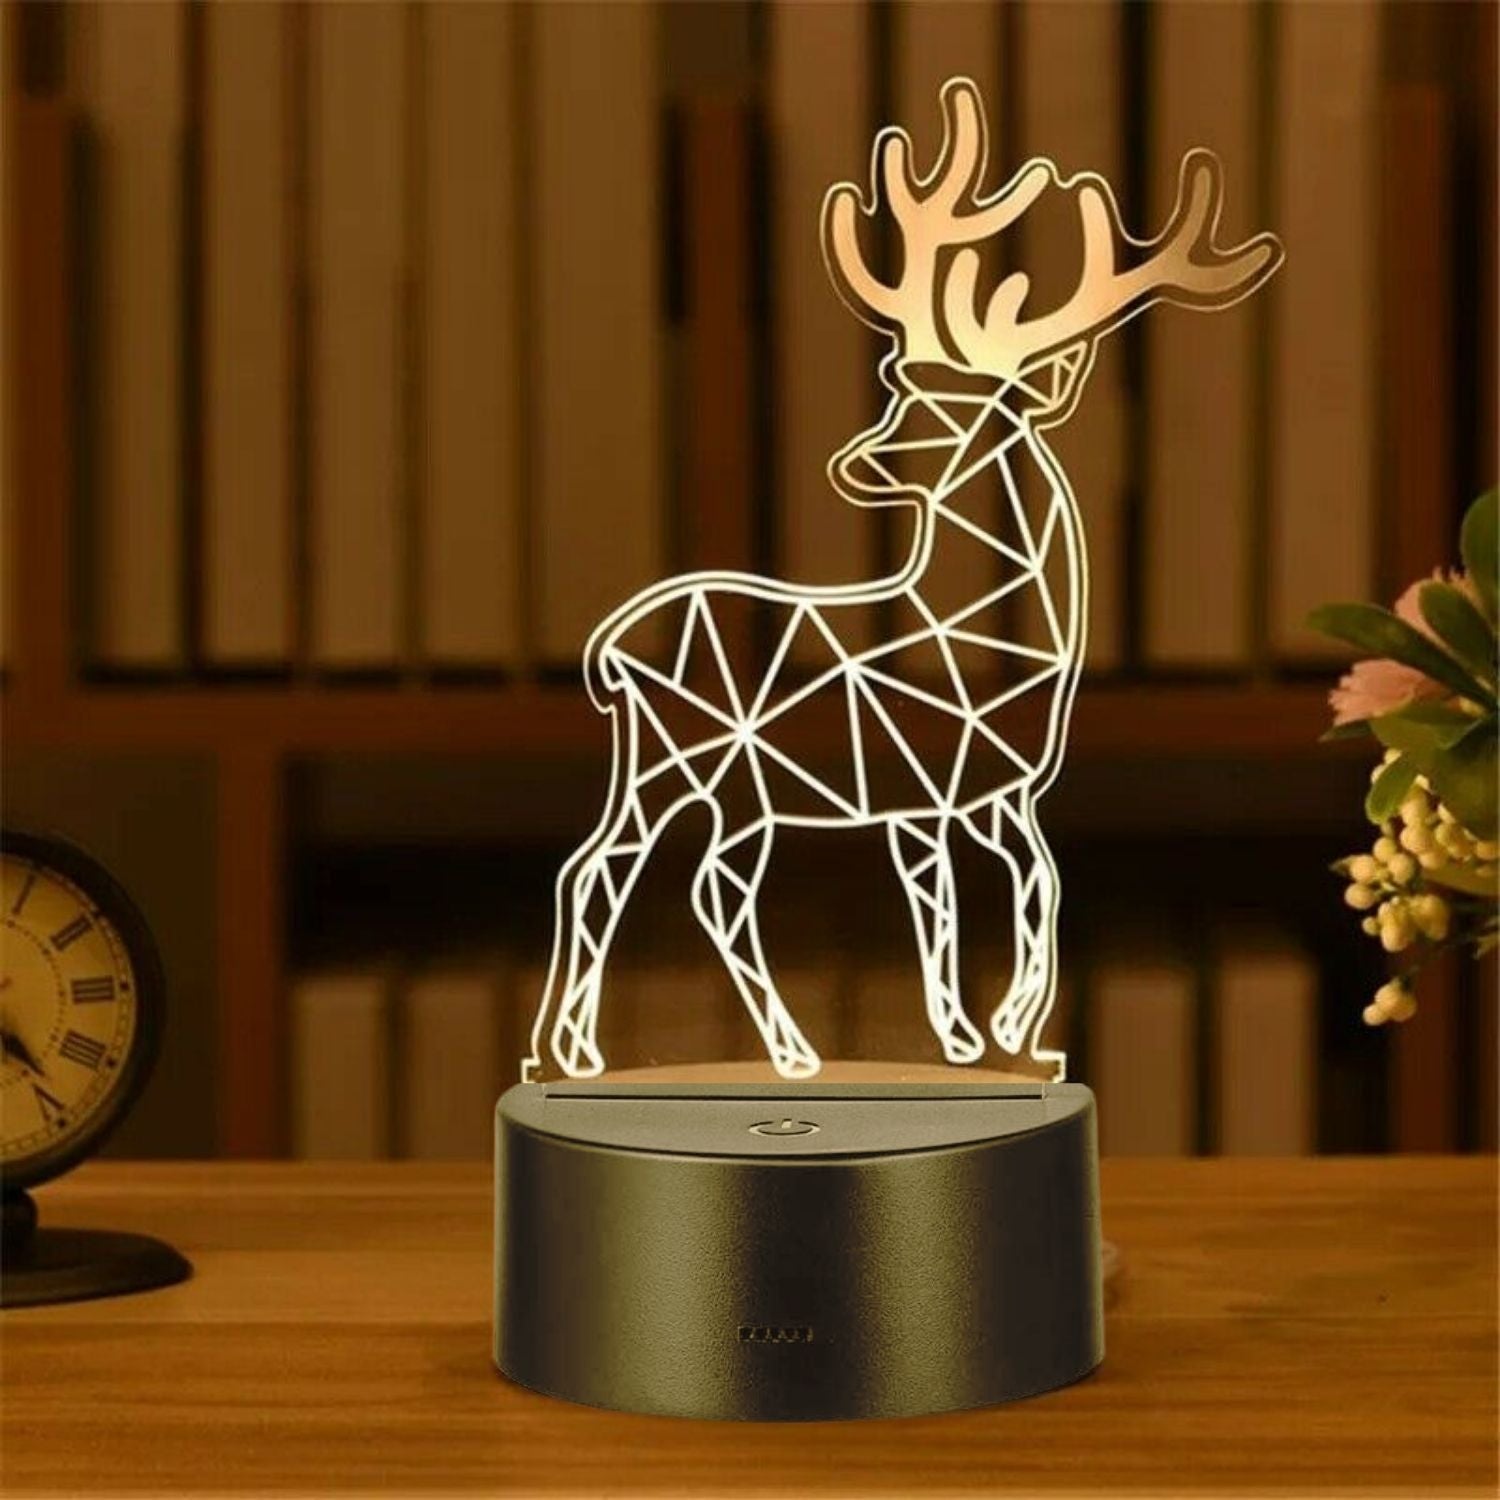 3D Illusion Deer Led Lamp 3D Illusion Led lamp- #Royalkart#3D Illusion Led lamp